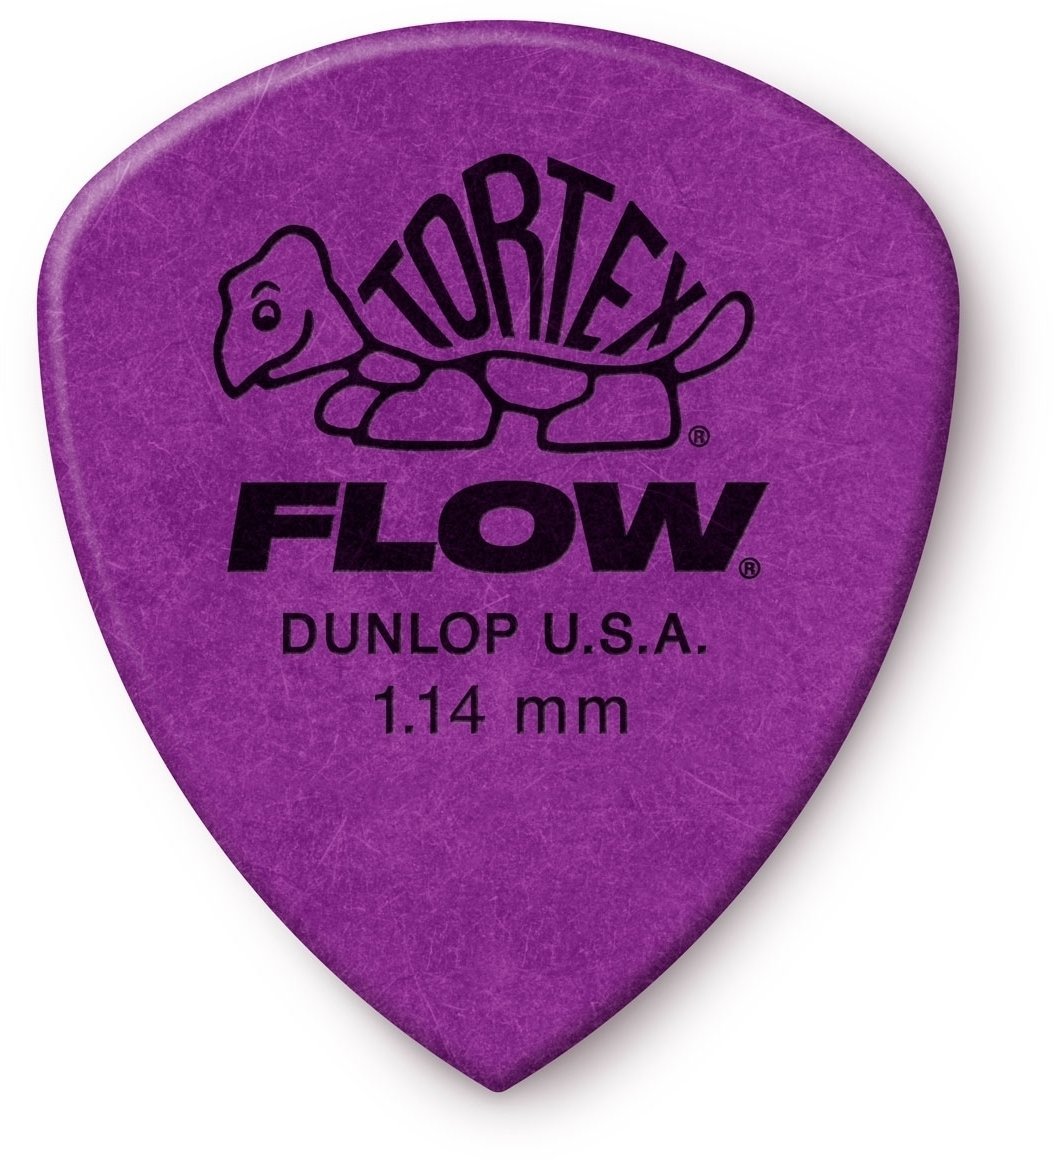 Kostka, piorko Dunlop Tortex Flow 1.14 Kostka, piorko